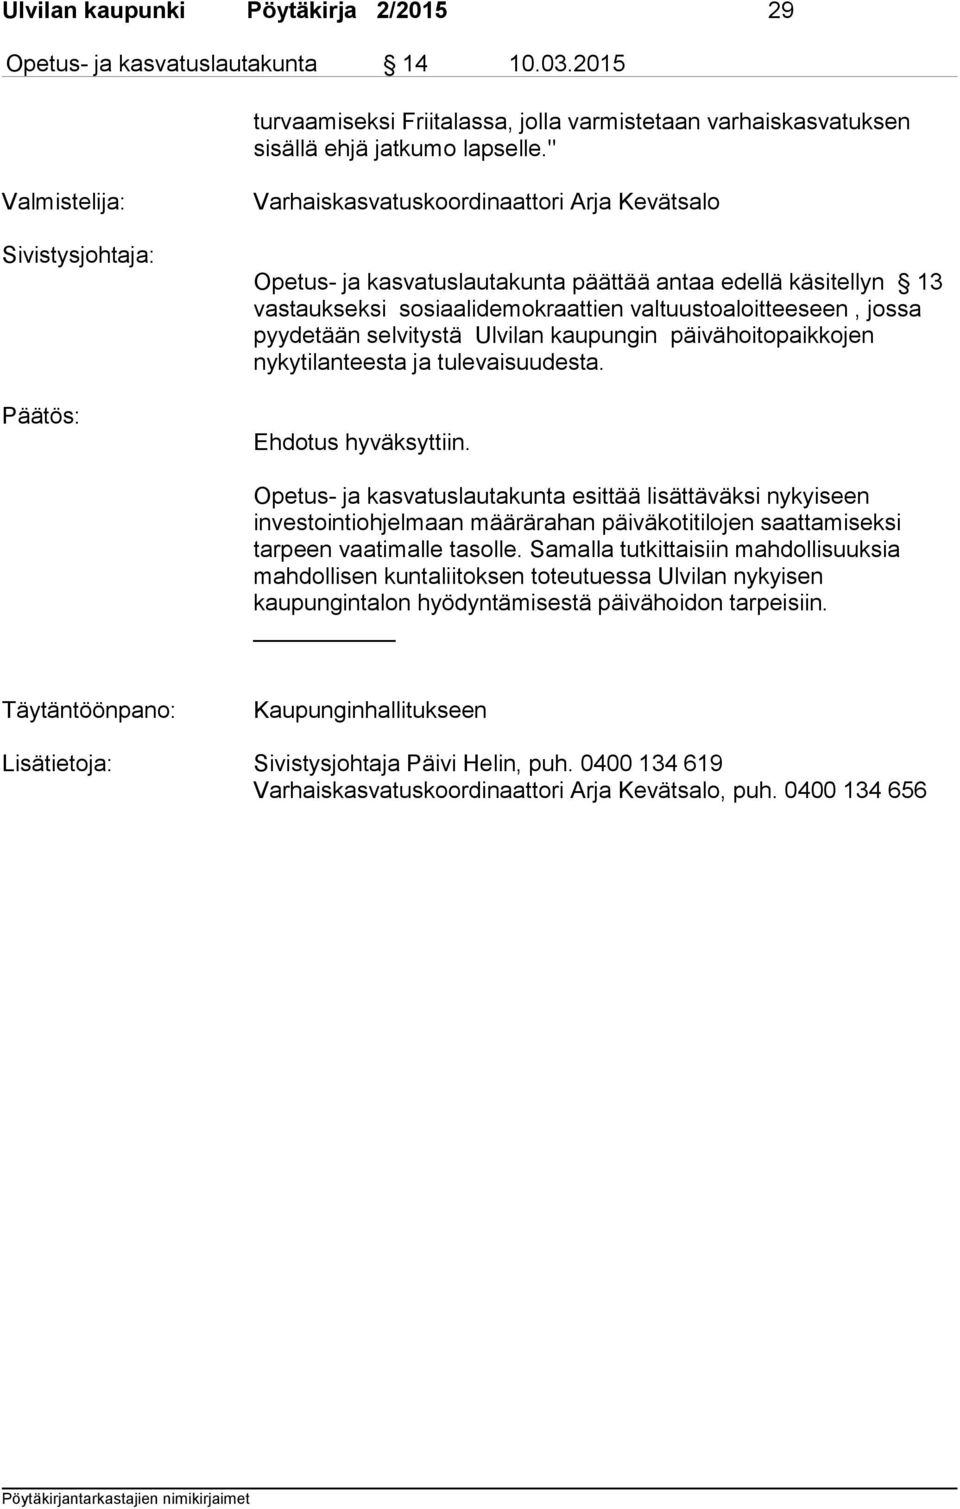 valtuustoaloitteeseen, jossa pyydetään selvitystä Ulvilan kaupungin päivähoitopaikkojen nykytilanteesta ja tulevaisuudesta. Ehdotus hyväksyttiin.